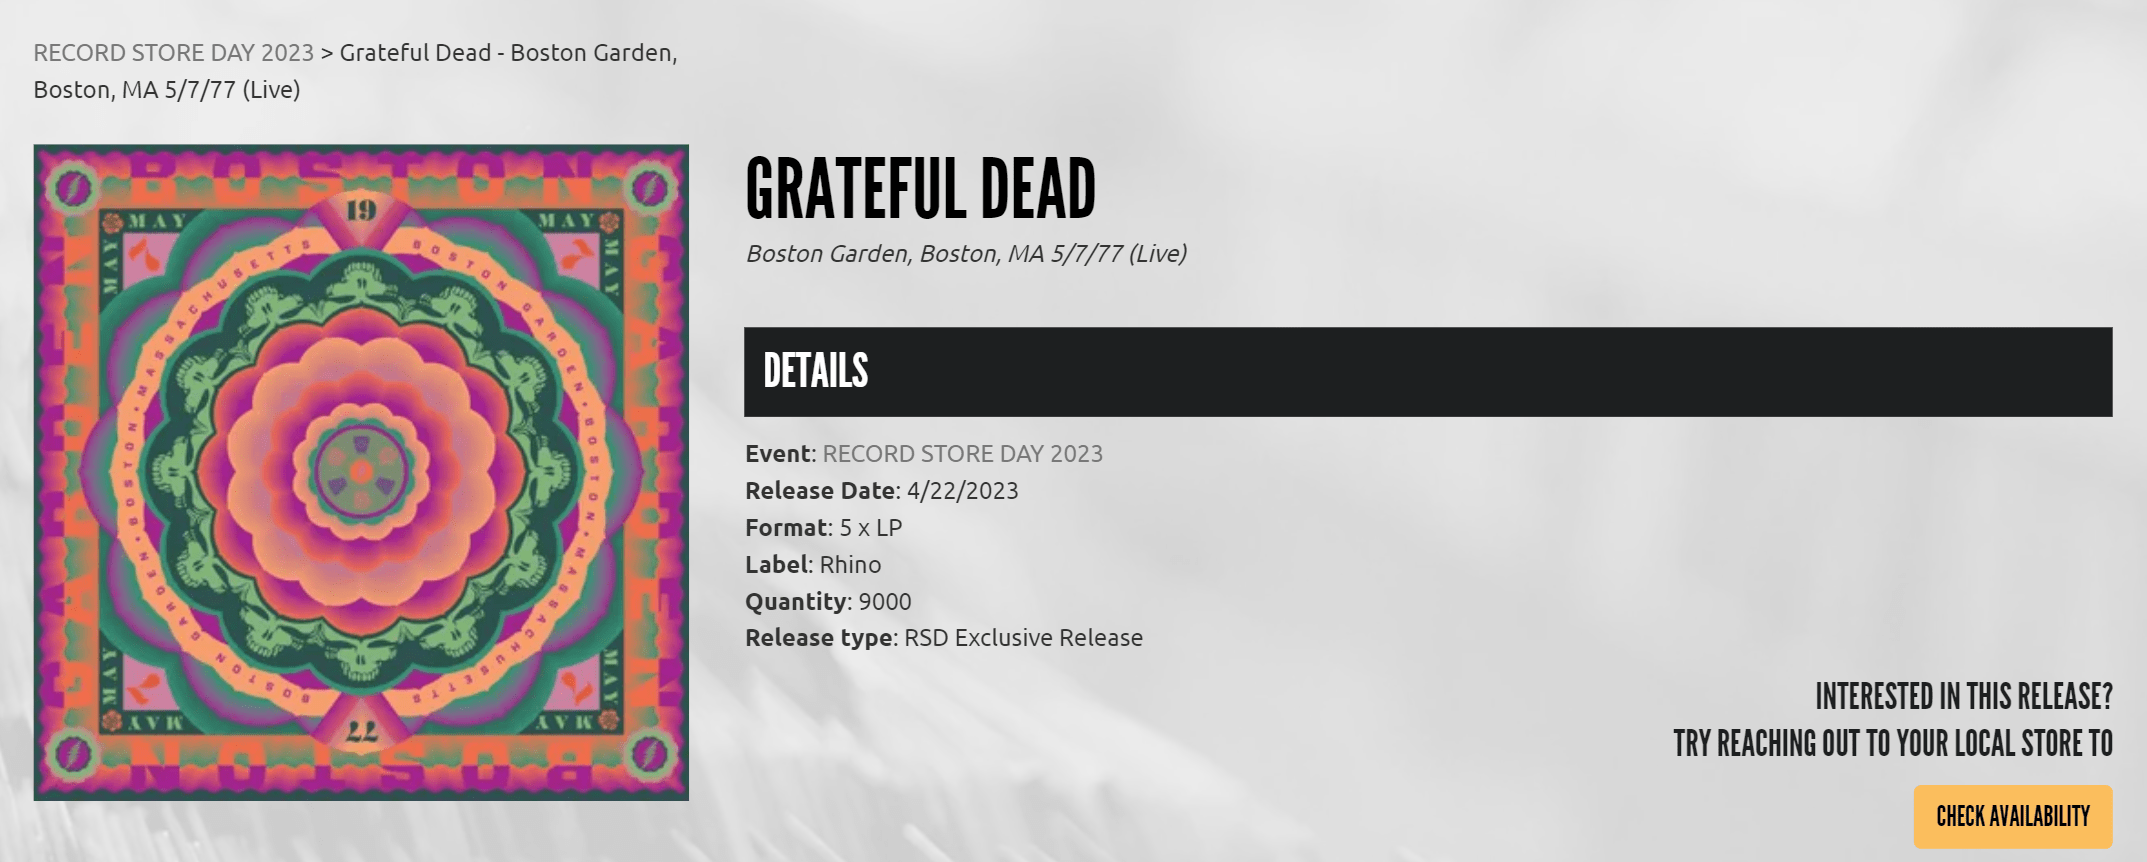 Record Store Day Grateful Dead RSD 2023